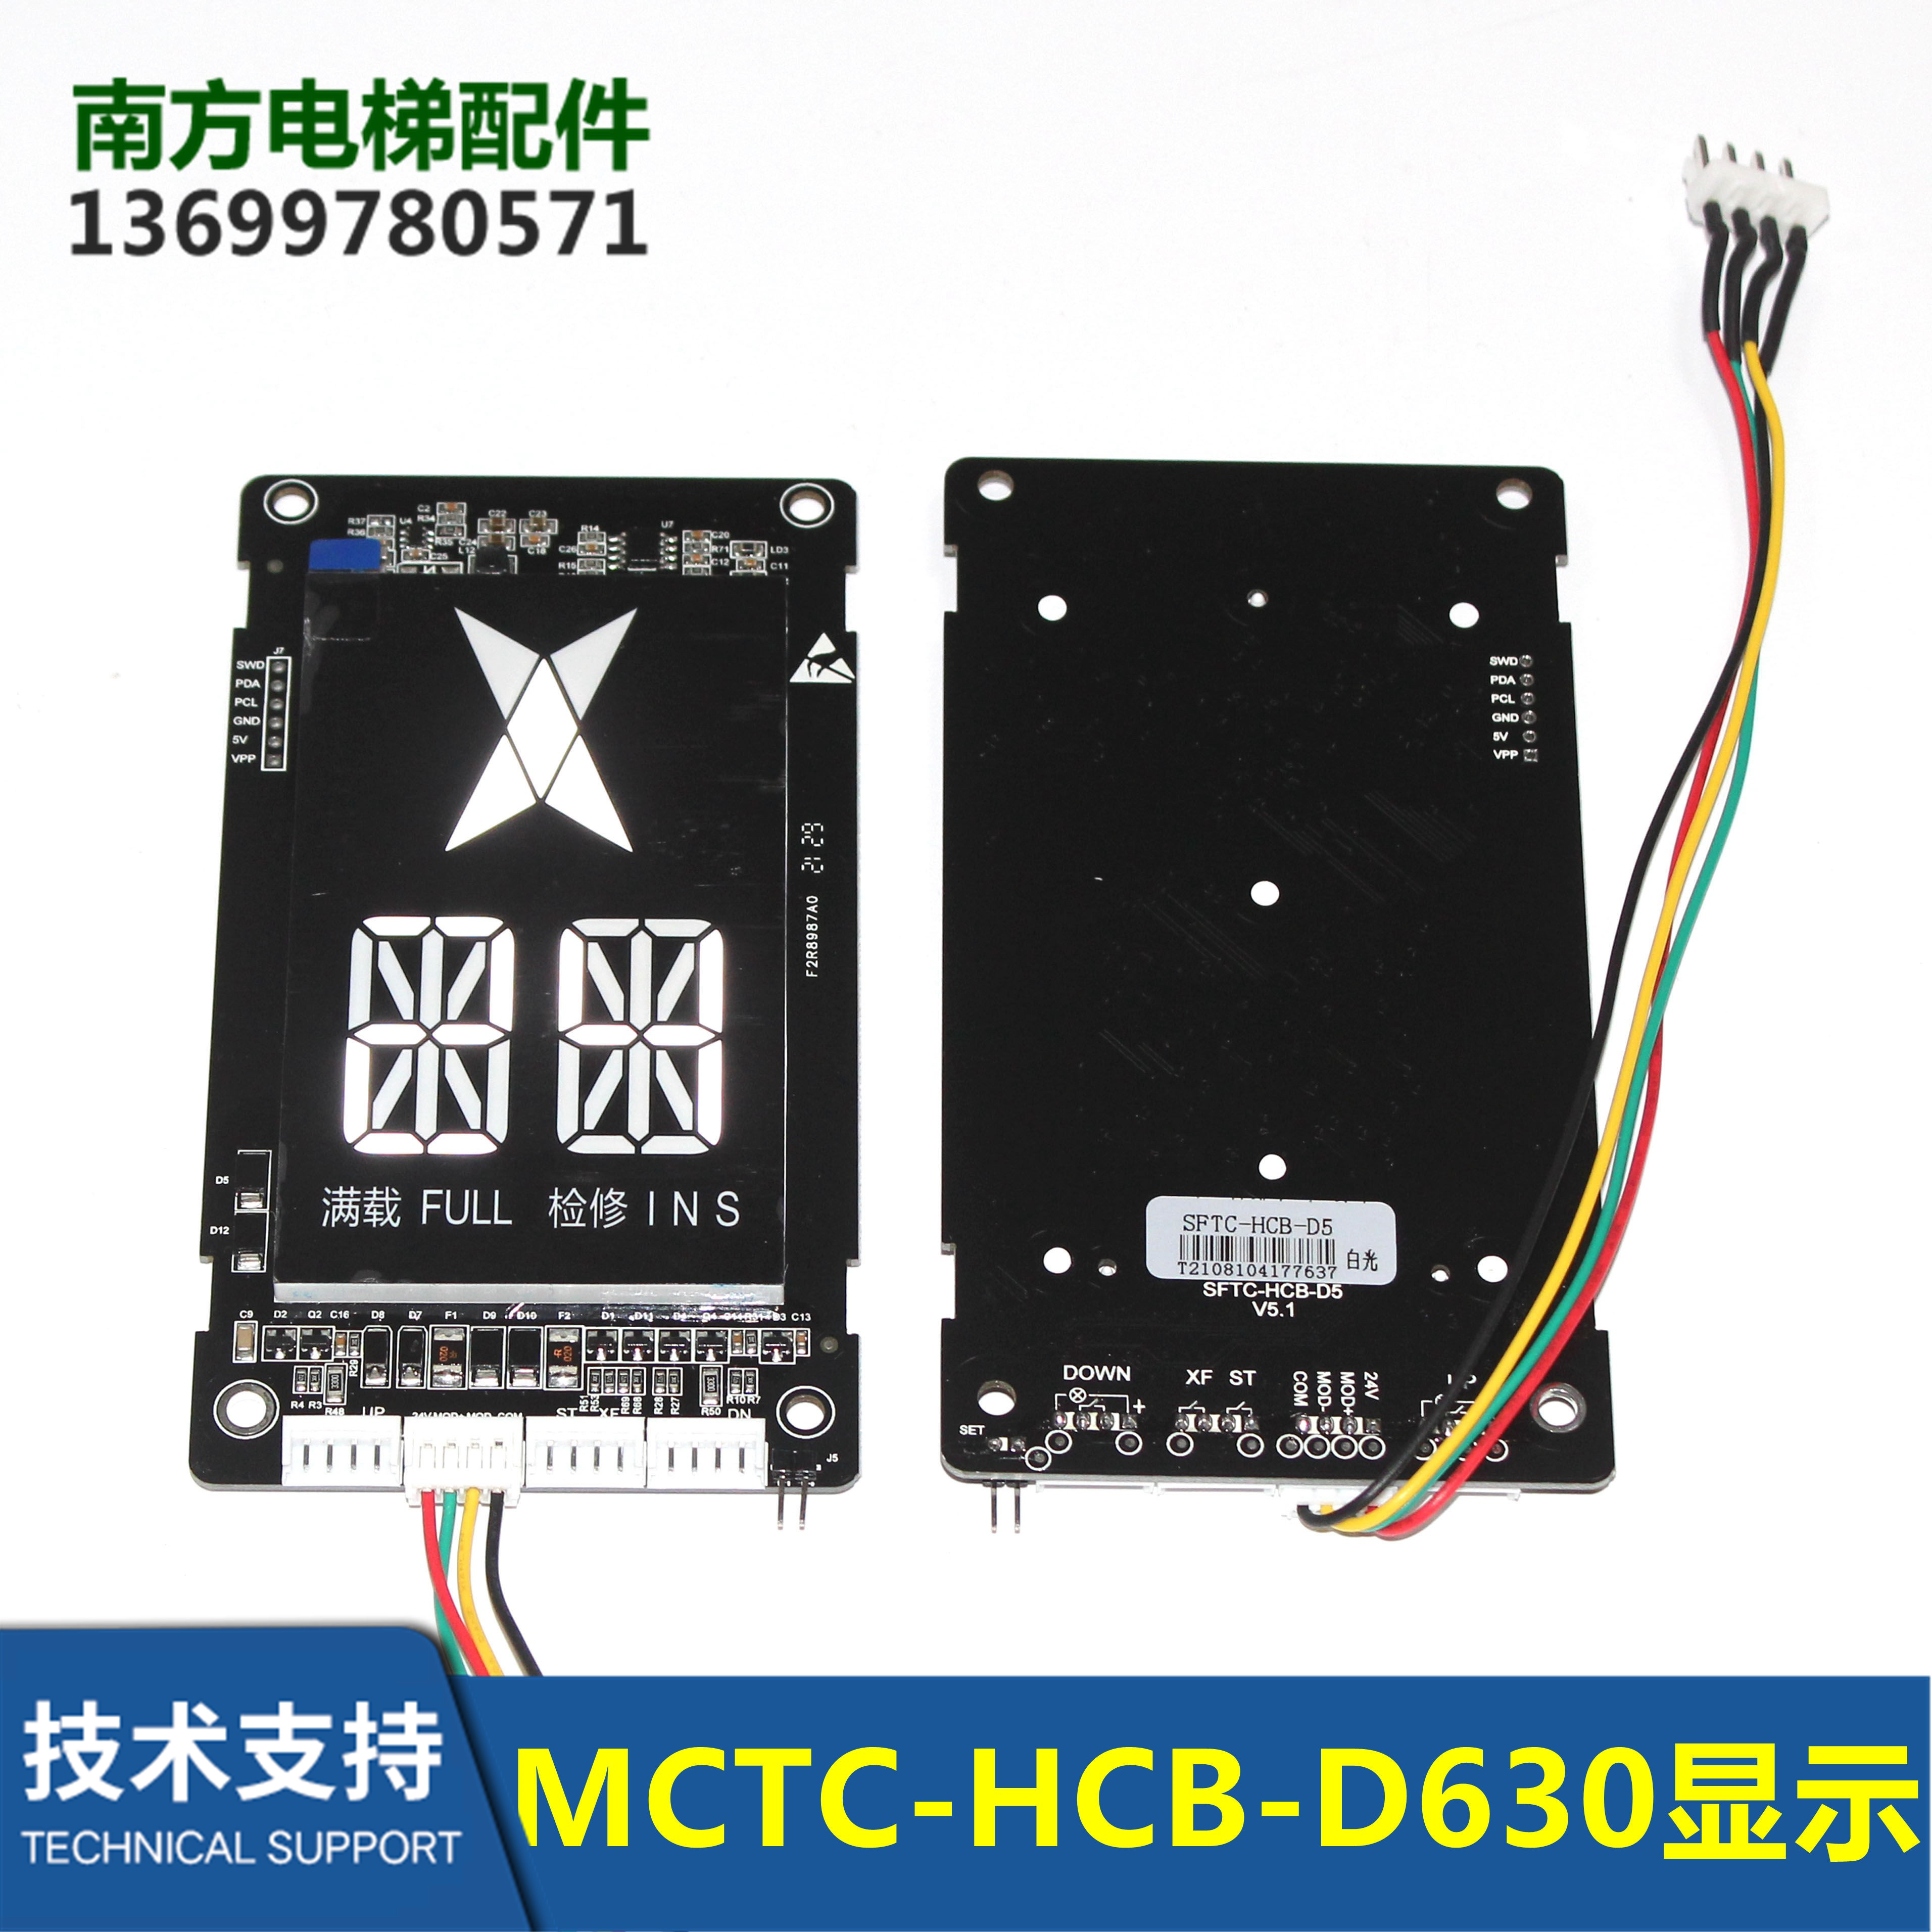 中海三菱电梯配件默纳克外呼显示板MCTC-HCB-D630S-RJ显示器全新